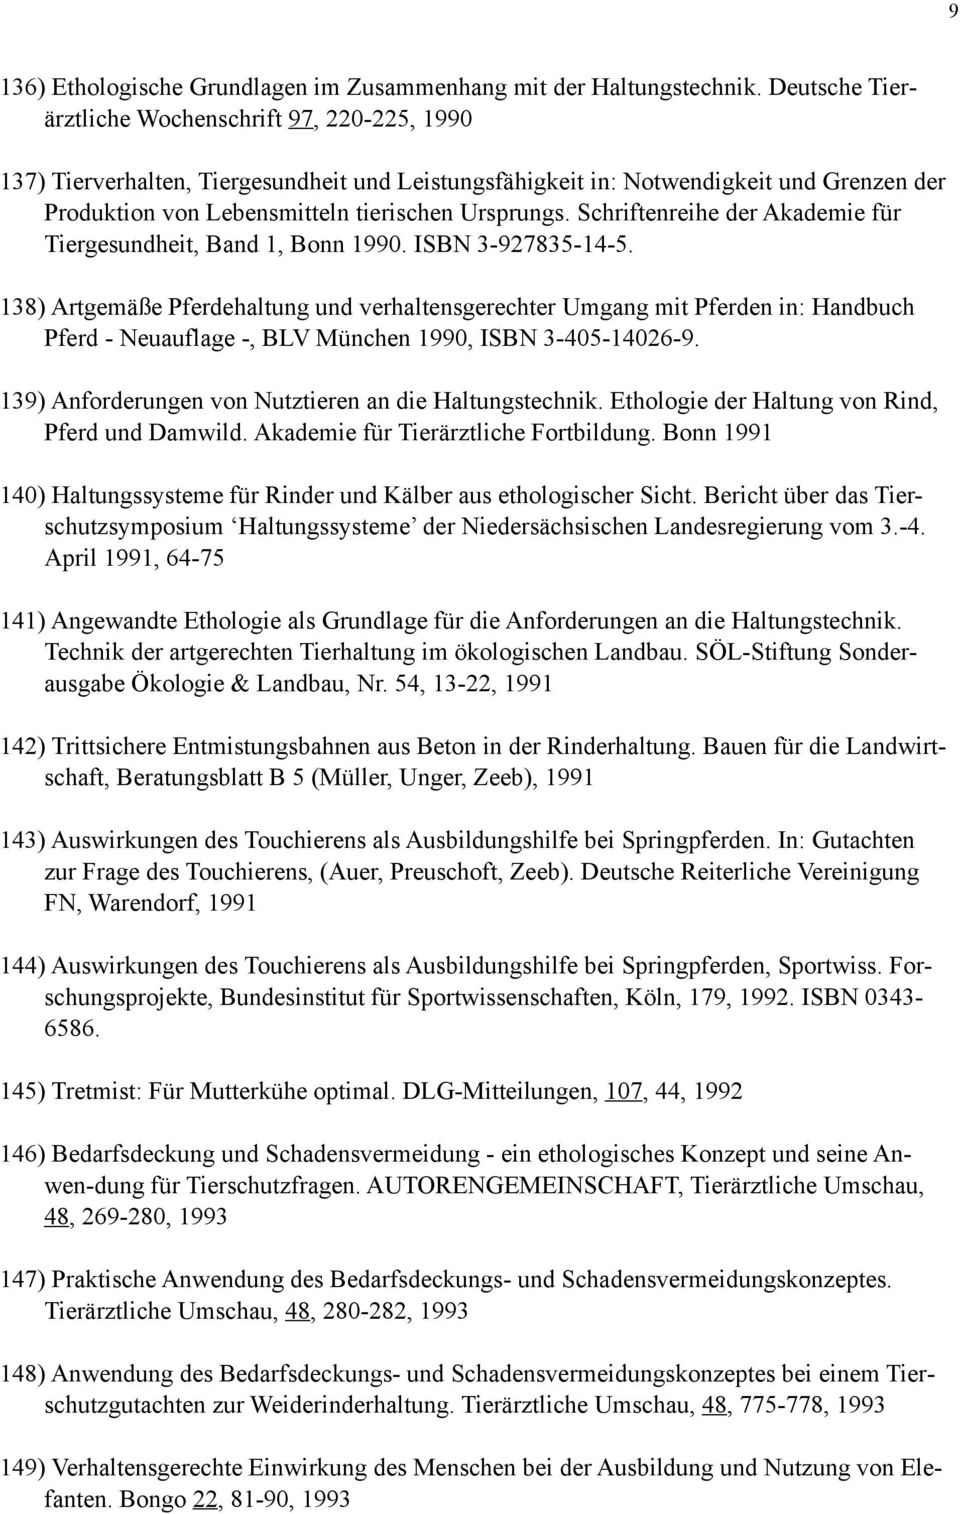 Schriftenreihe der Akademie für Tiergesundheit, Band 1, Bonn 1990. ISBN 3-927835-14-5.